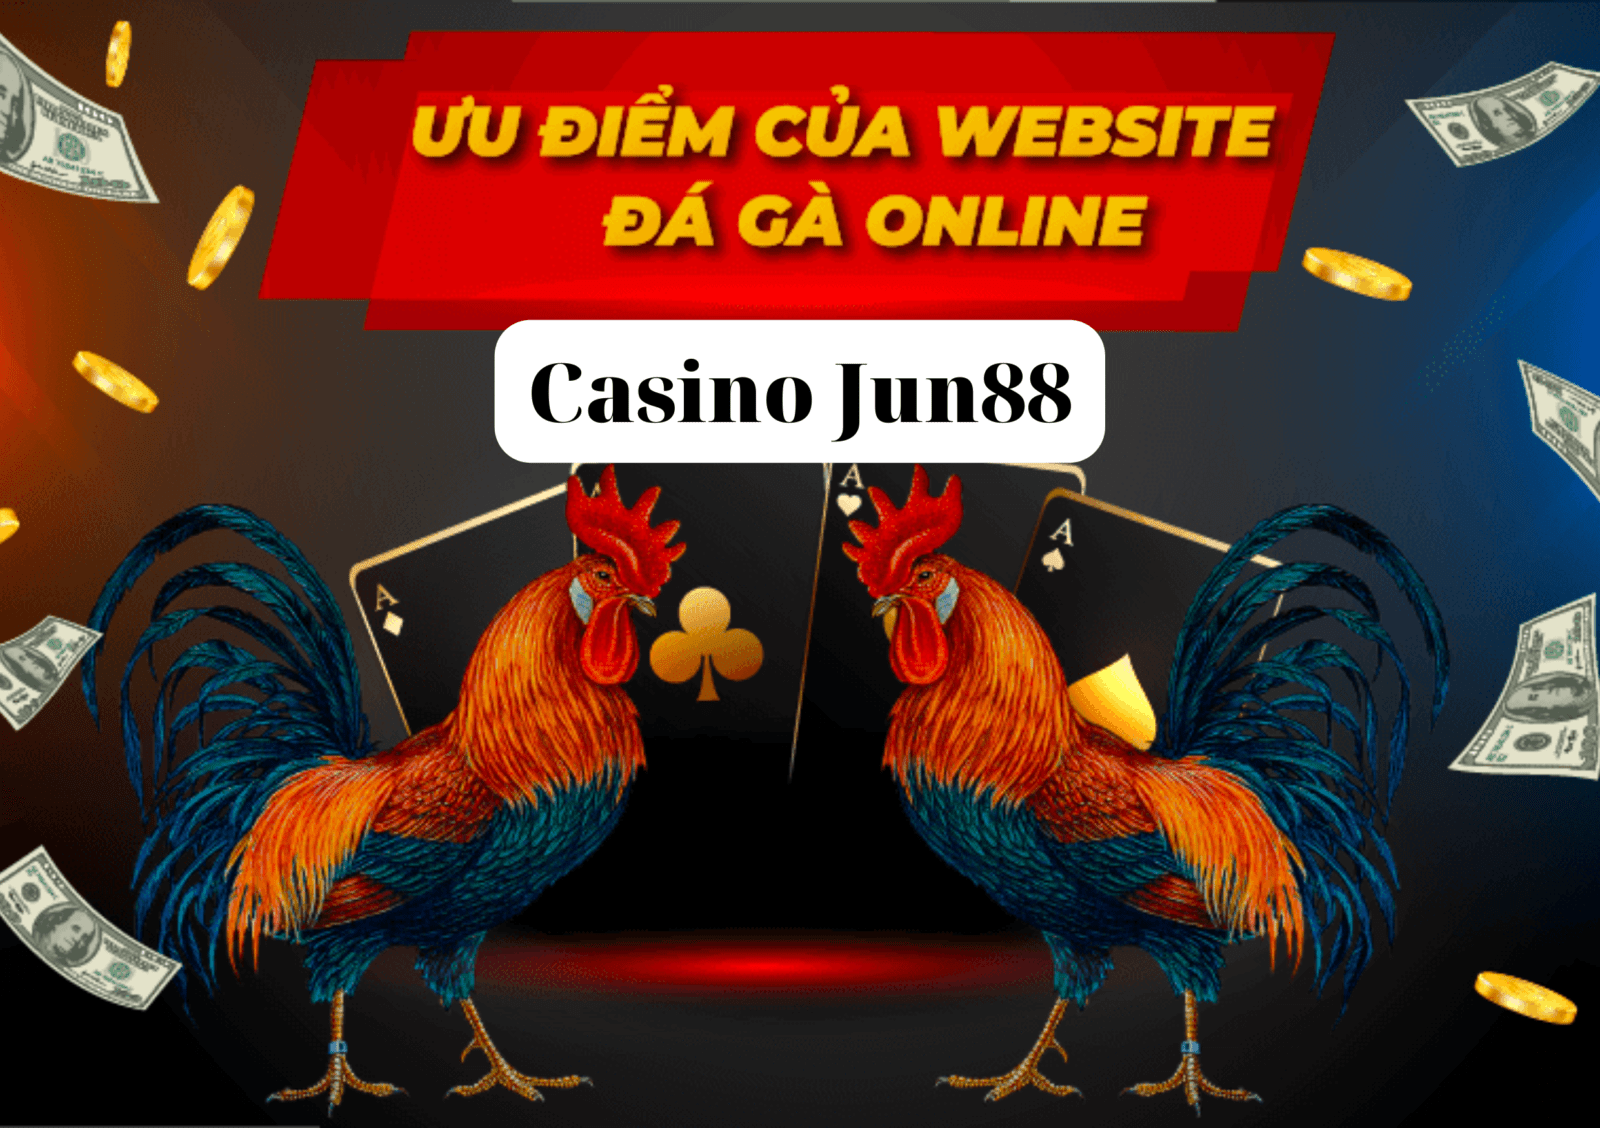 Siêu Phẩm Đá Gà Online Tại Casino Jun88 Không Thể Bỏ Lỡ